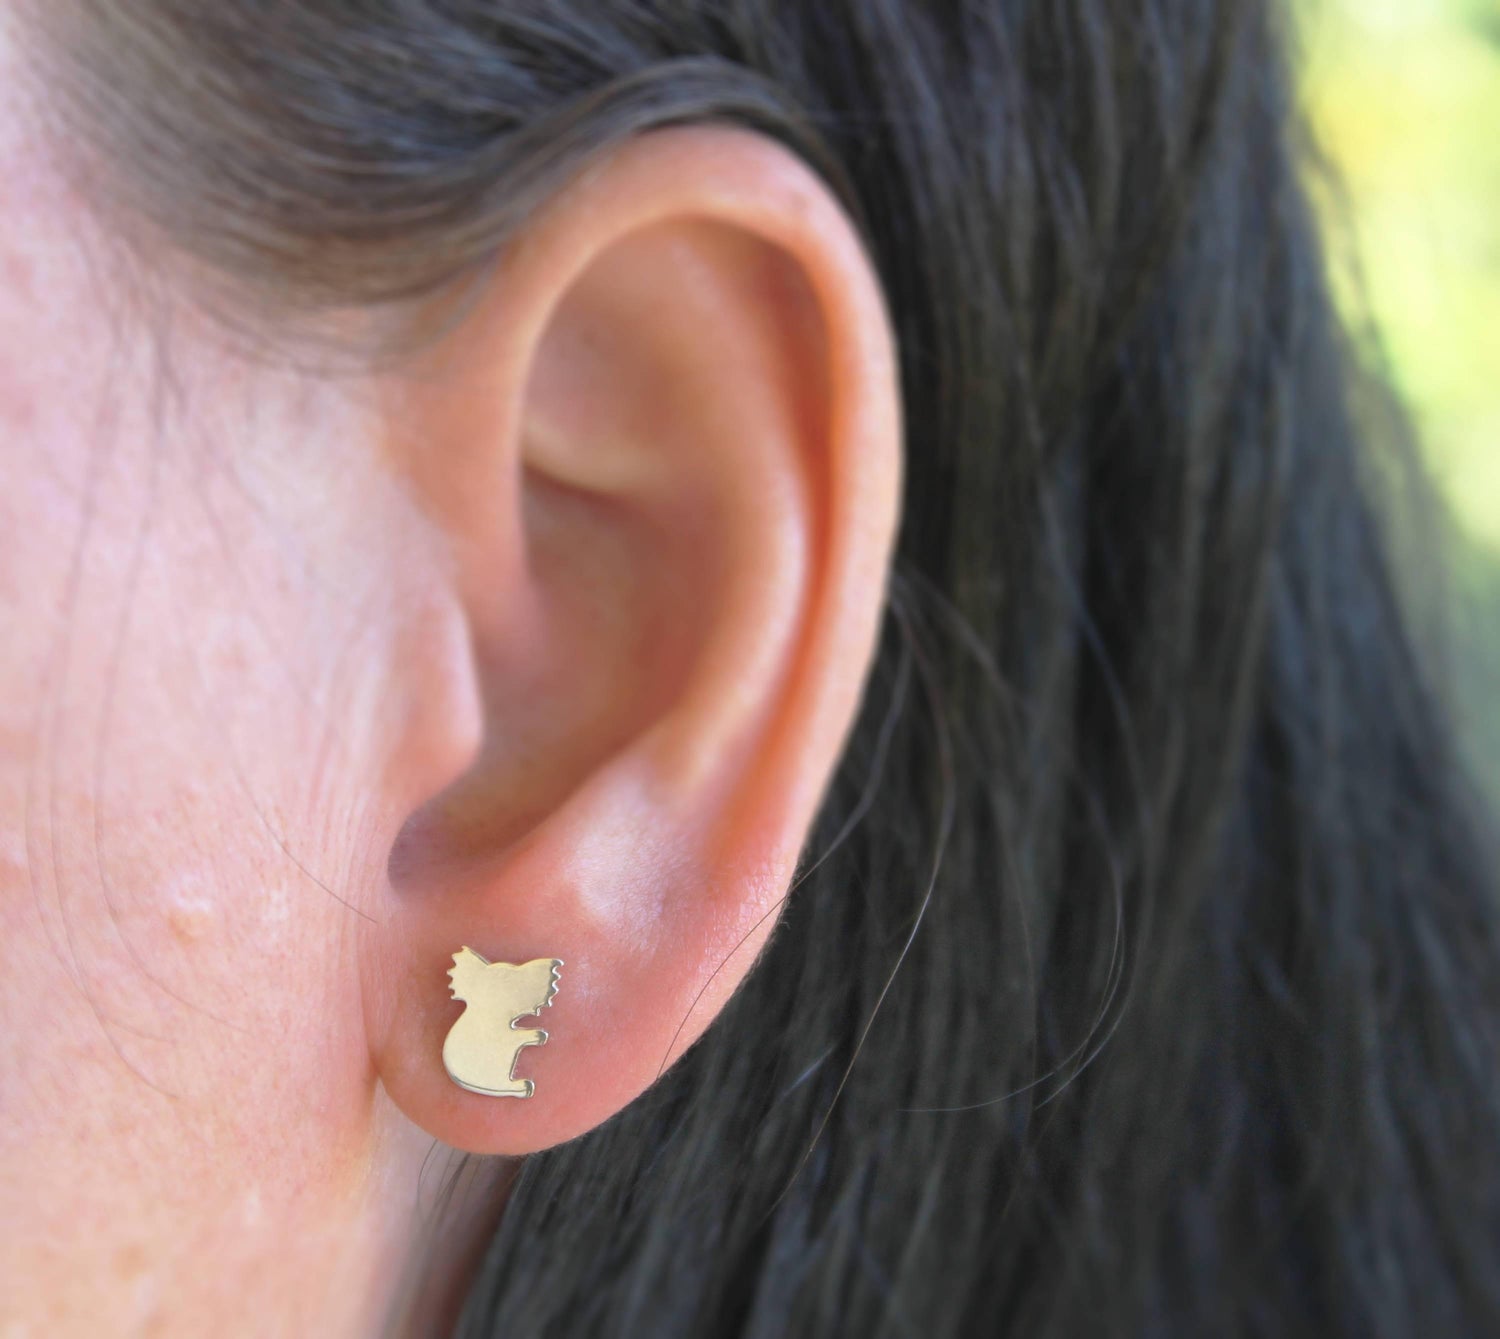 Koala Earrings, Sterling Silver Post Earrings, Australian Native Animal Earrings - Sweet November Jewelry